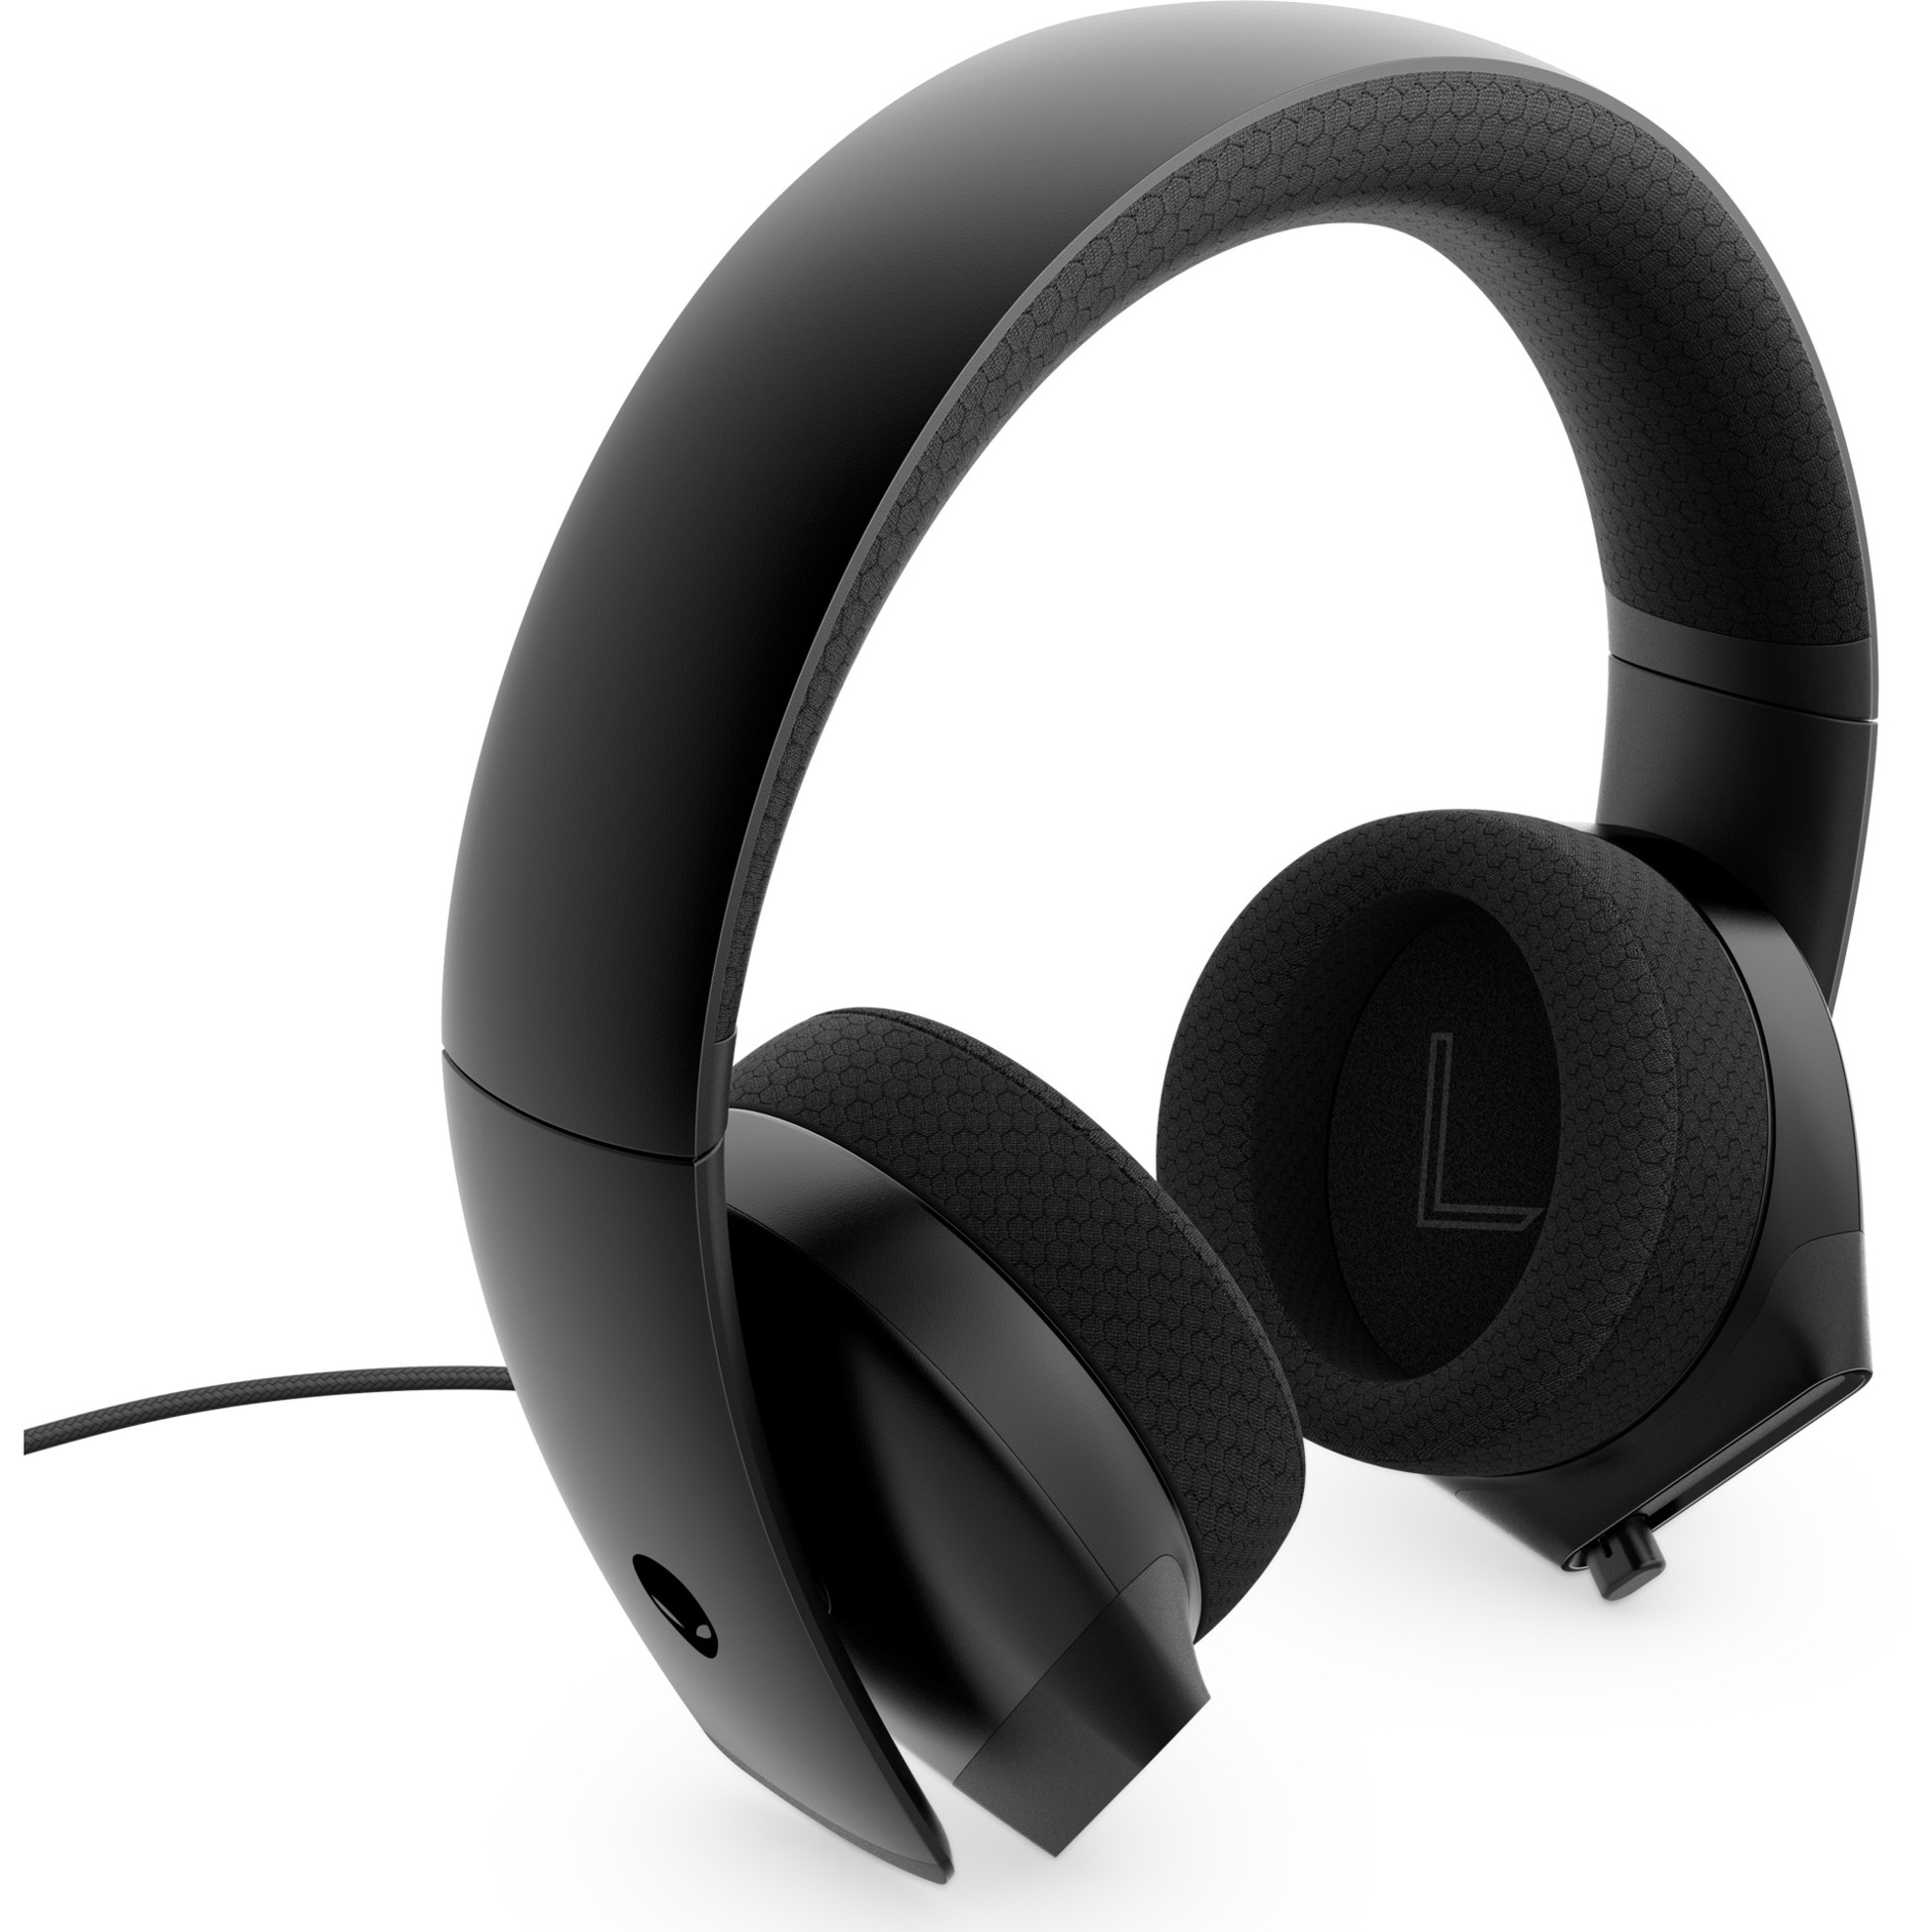 Image of Alternate - HS AW310H, Gaming-Headset online einkaufen bei Alternate